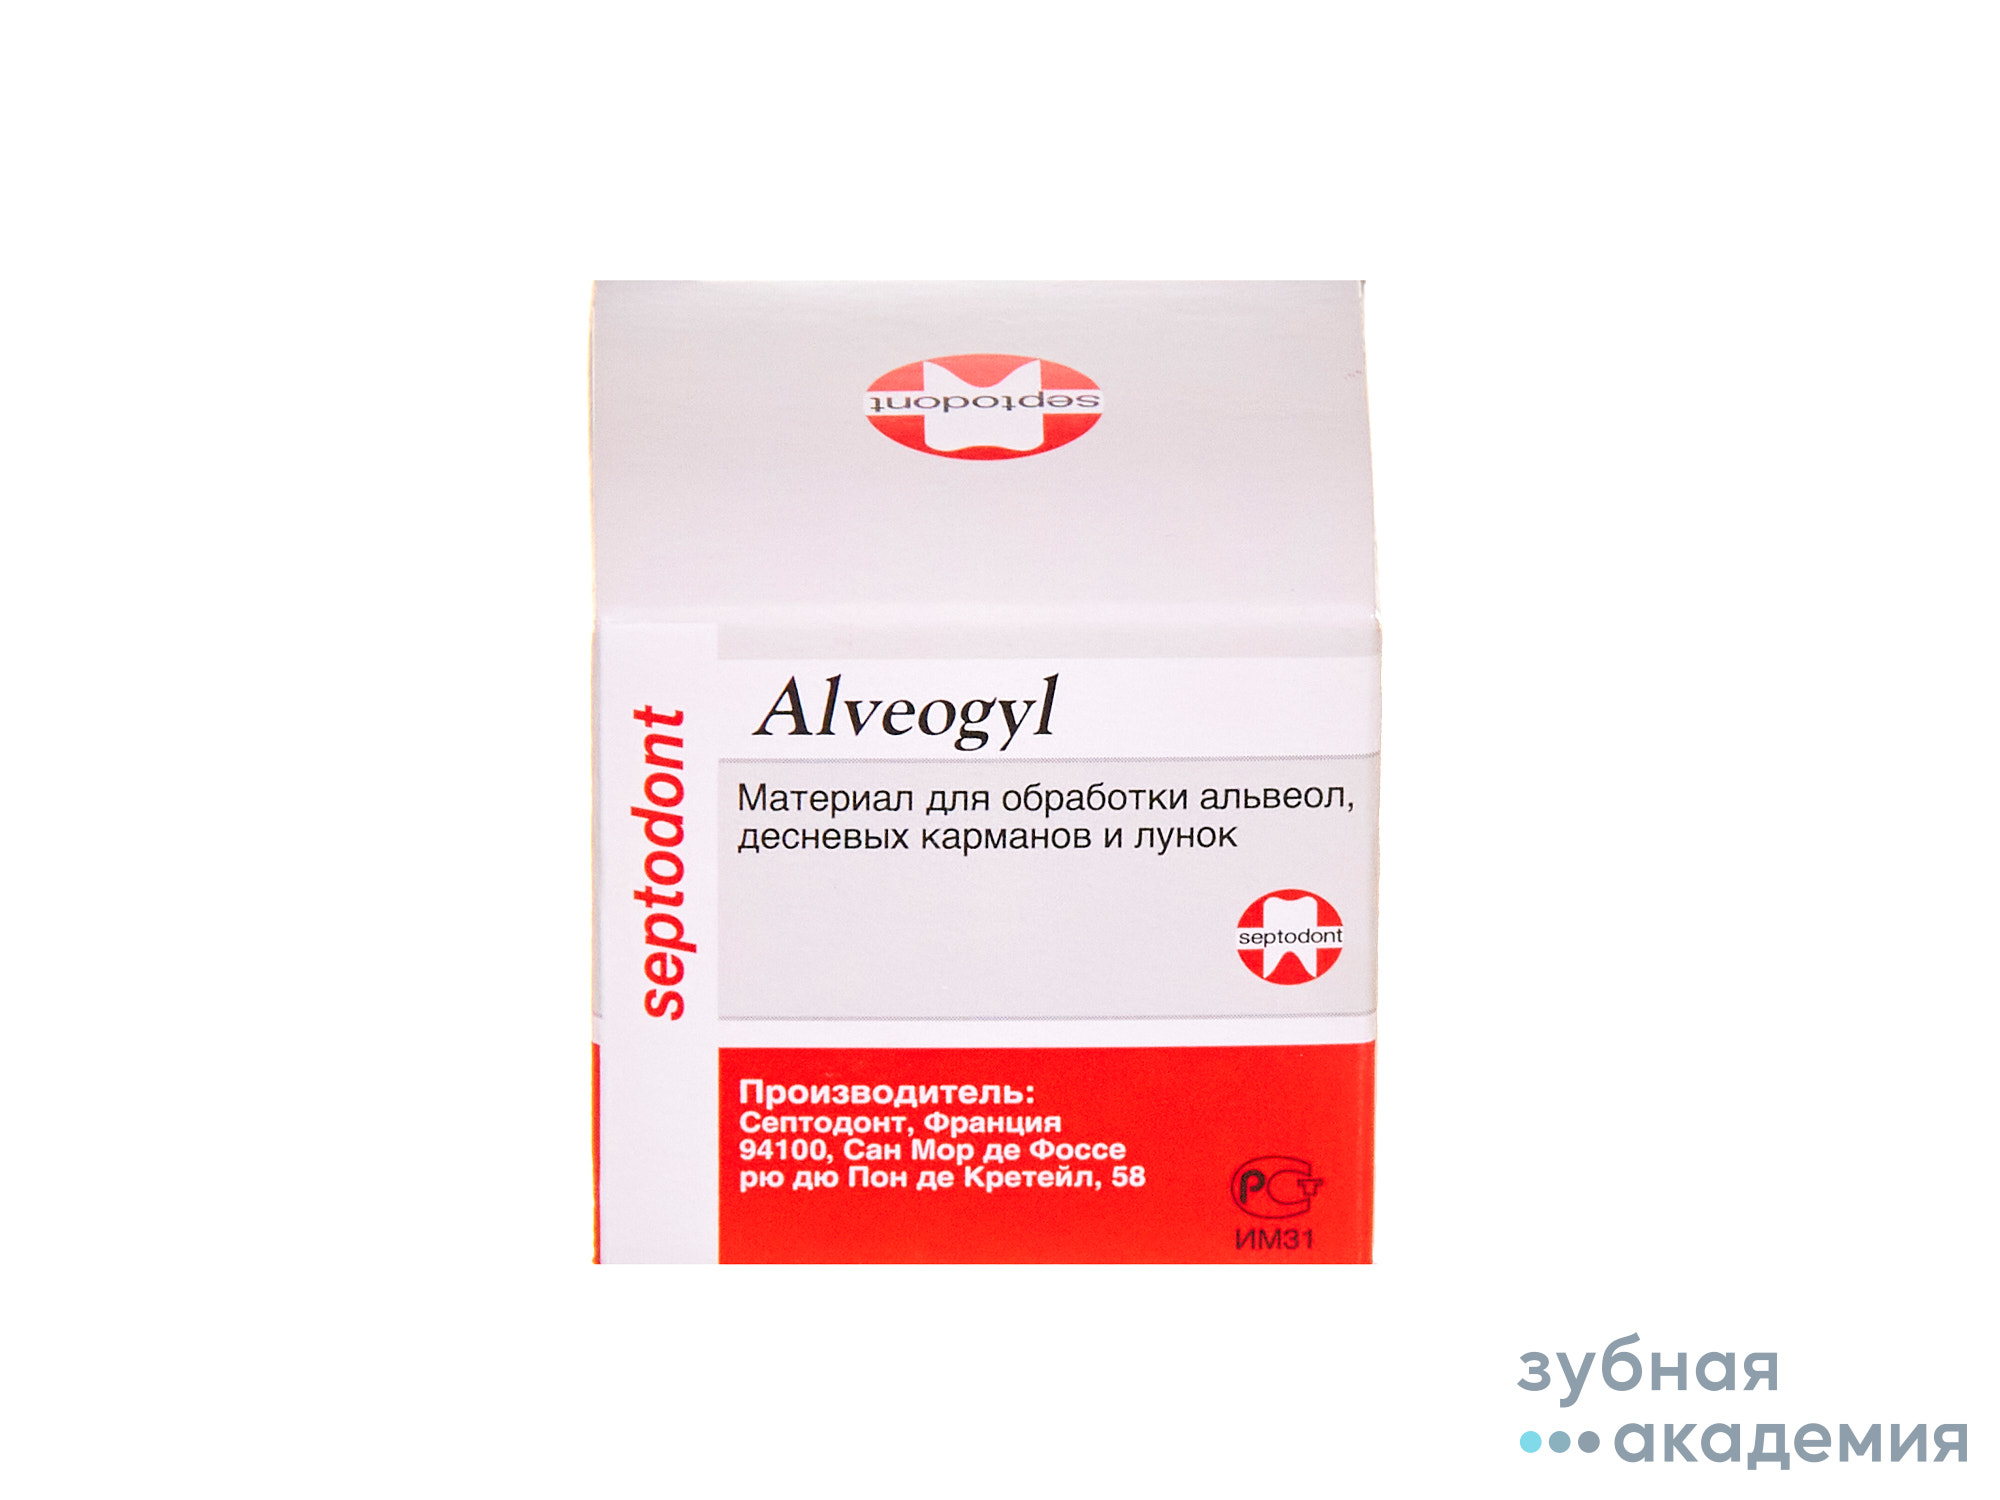 Alveogyl / Альвожиль (10 г) Septodont/ Франция